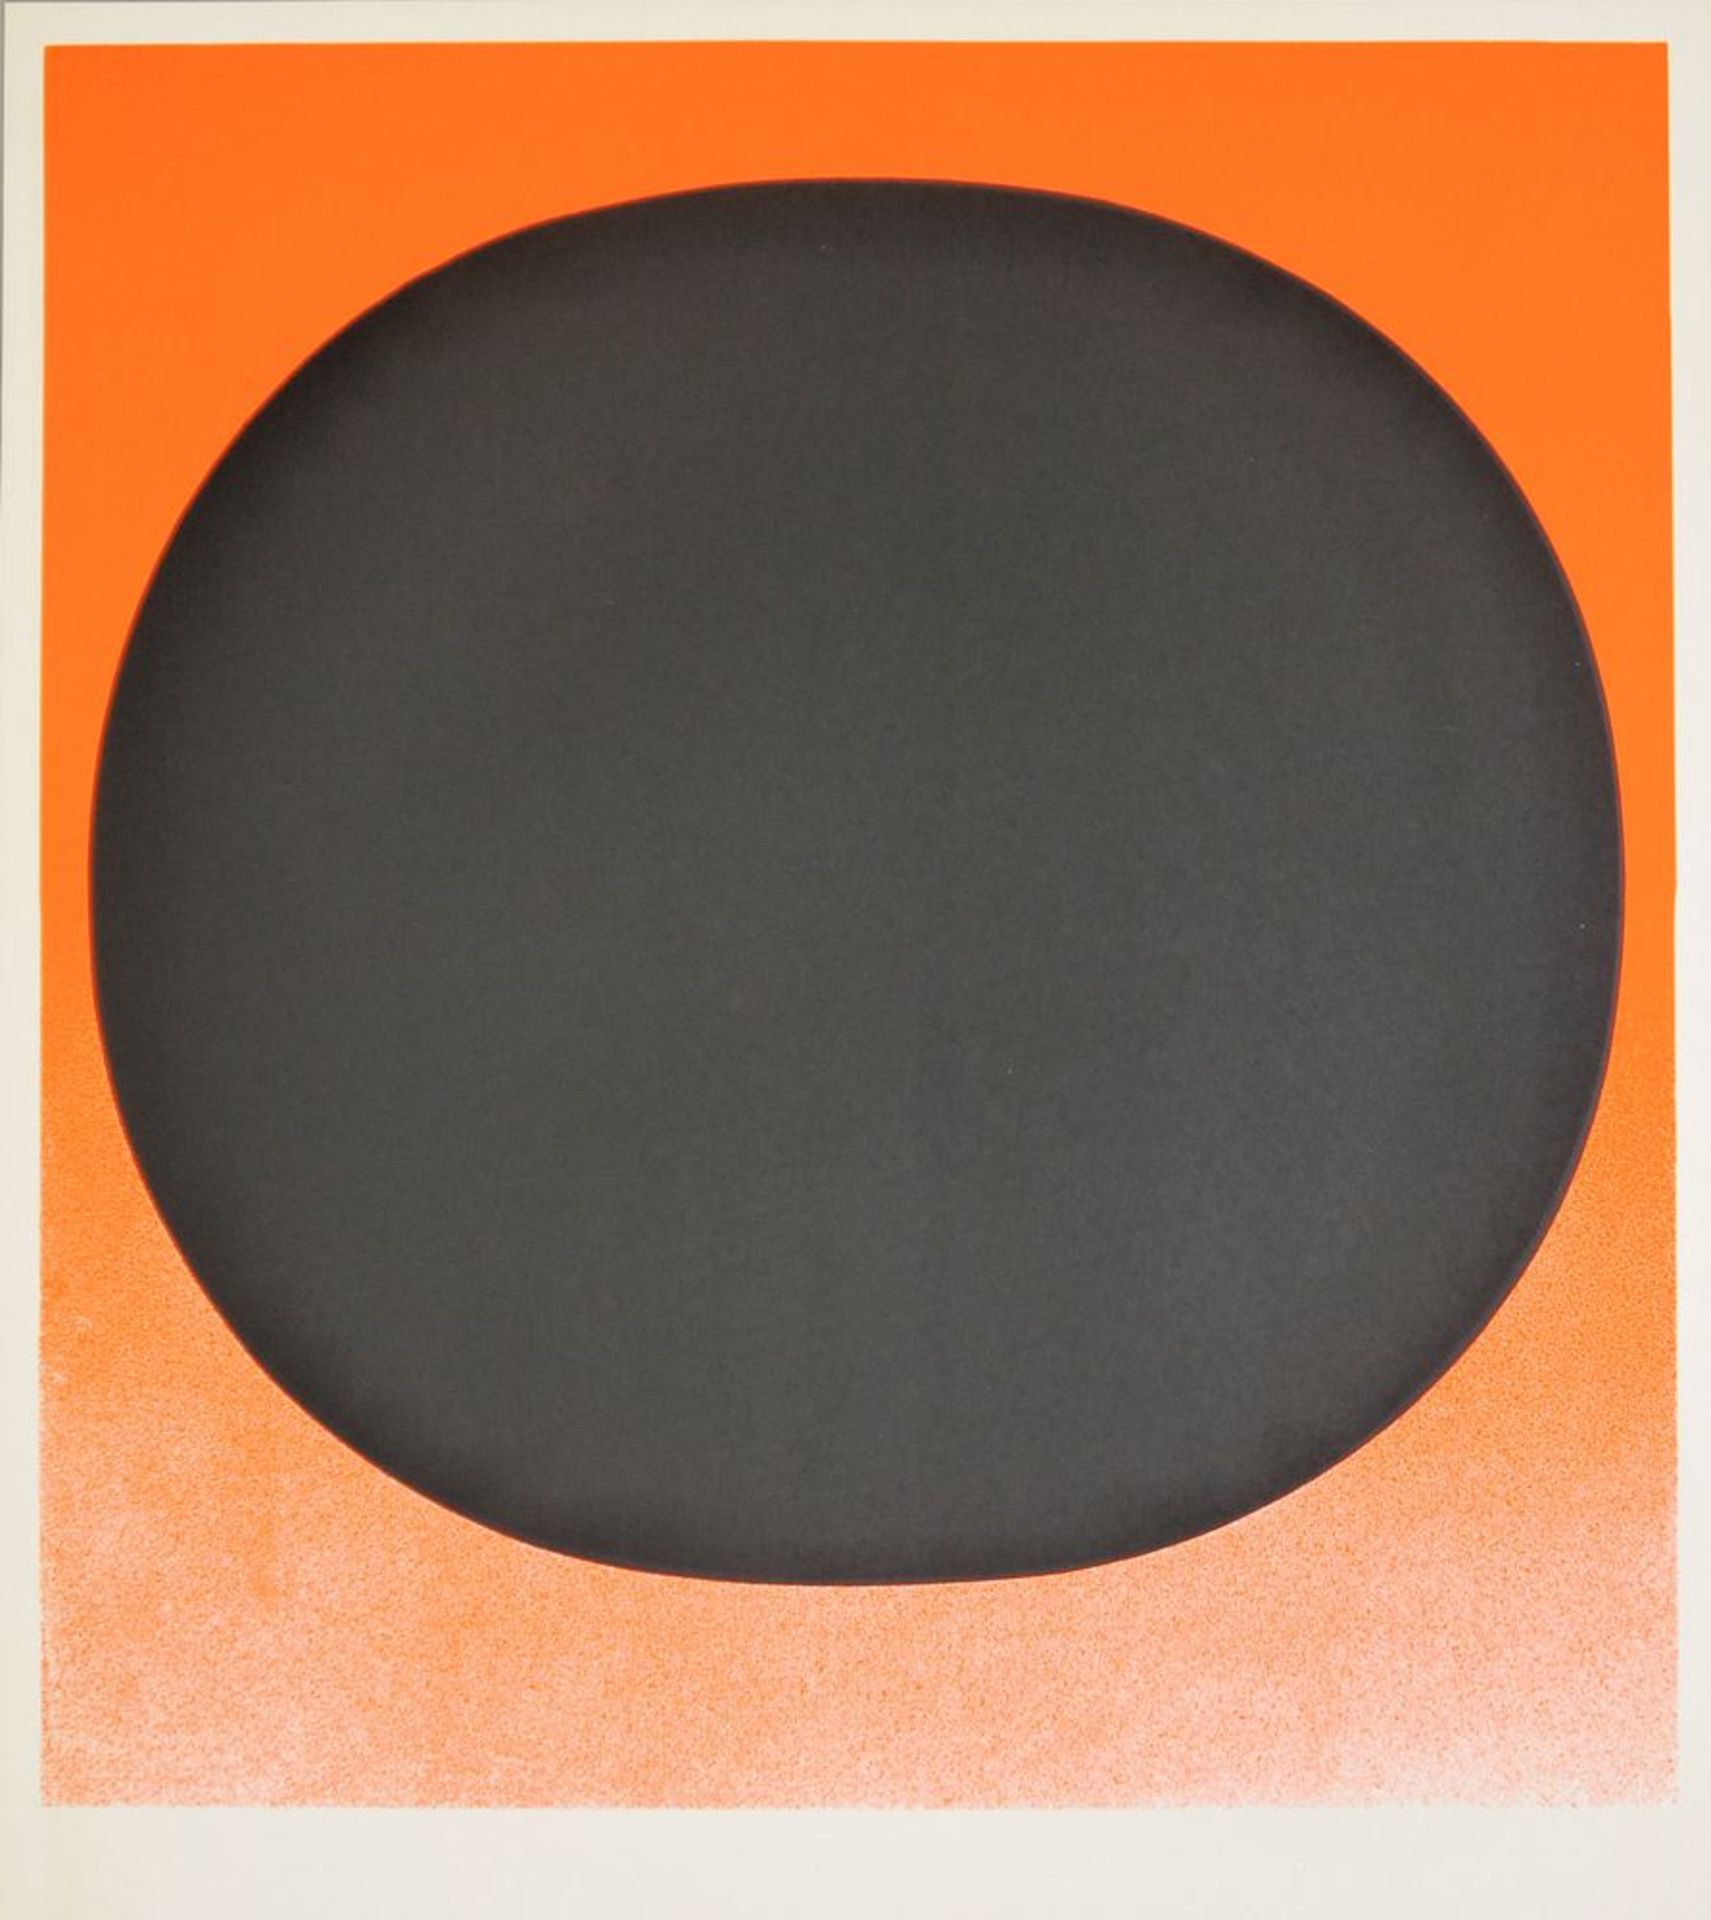 Rupprecht Geiger, Schwarzer Kreis auf Rot-Orange, Farbserigrafie, 1968